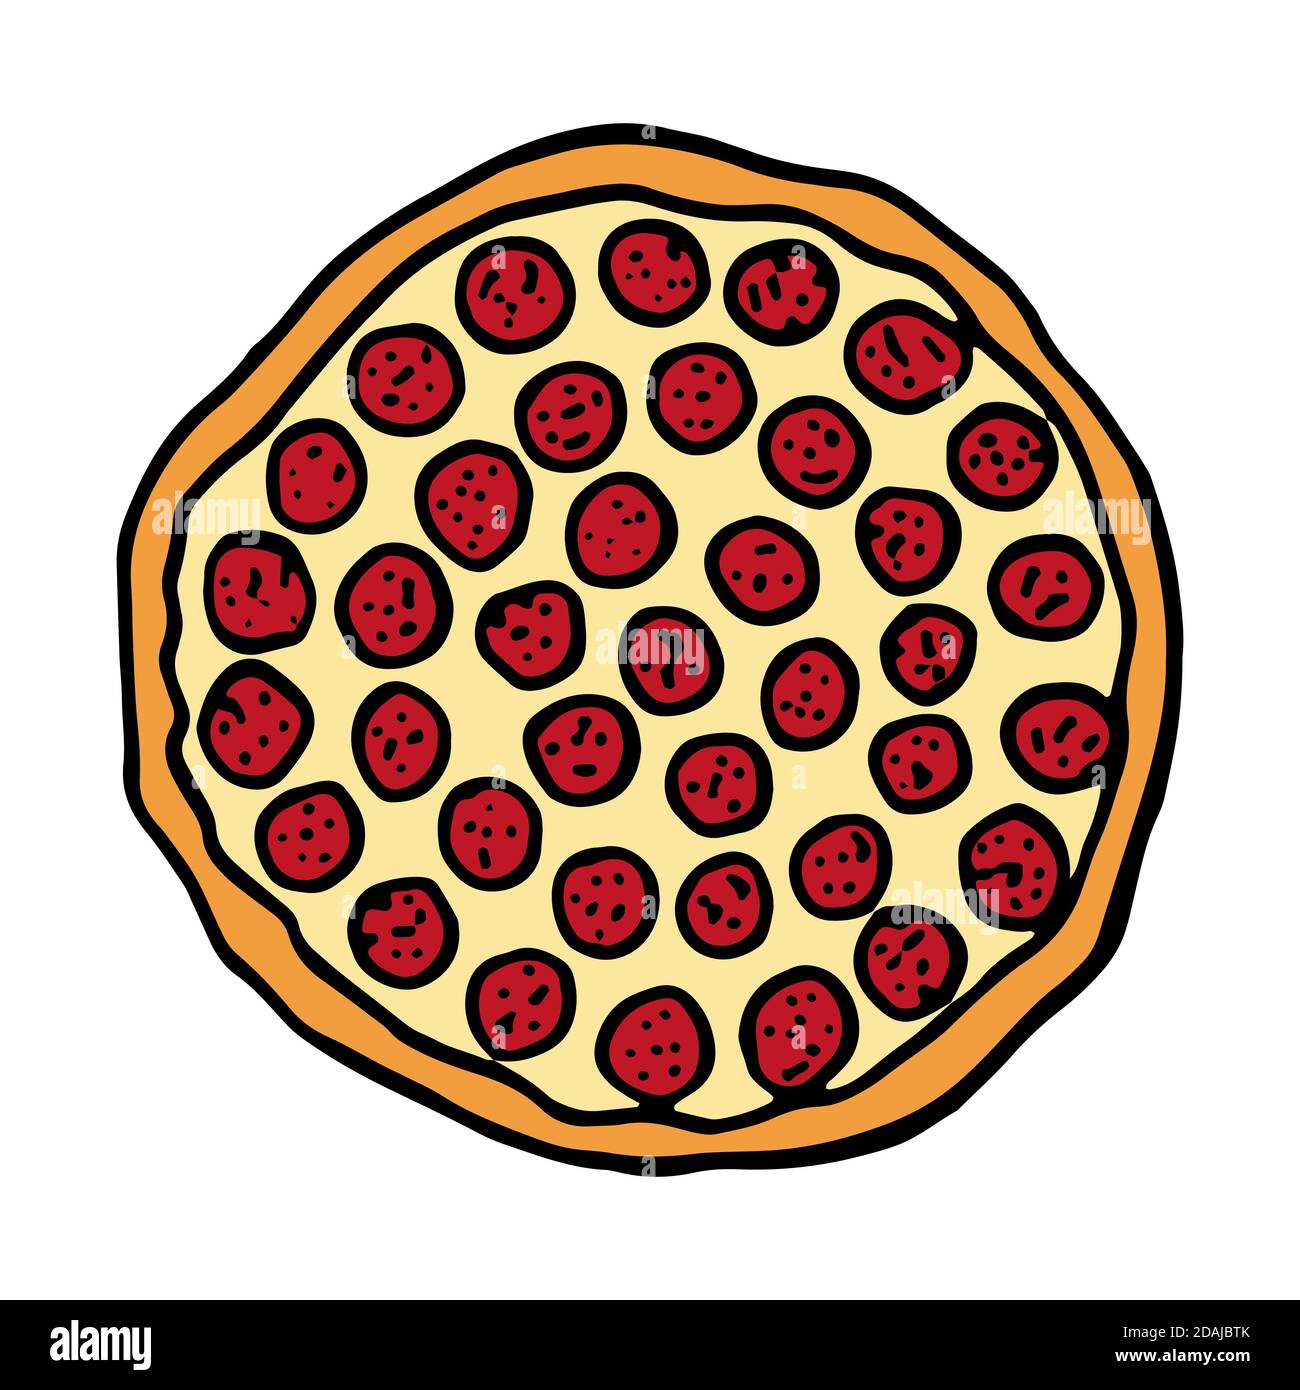 Pizza cucina italiana tradizionale. Stile di schizzo disegnato a mano. Immagine vettoriale colorata isolato su sfondo bianco per il menu ristorante e pacchetti des Illustrazione Vettoriale